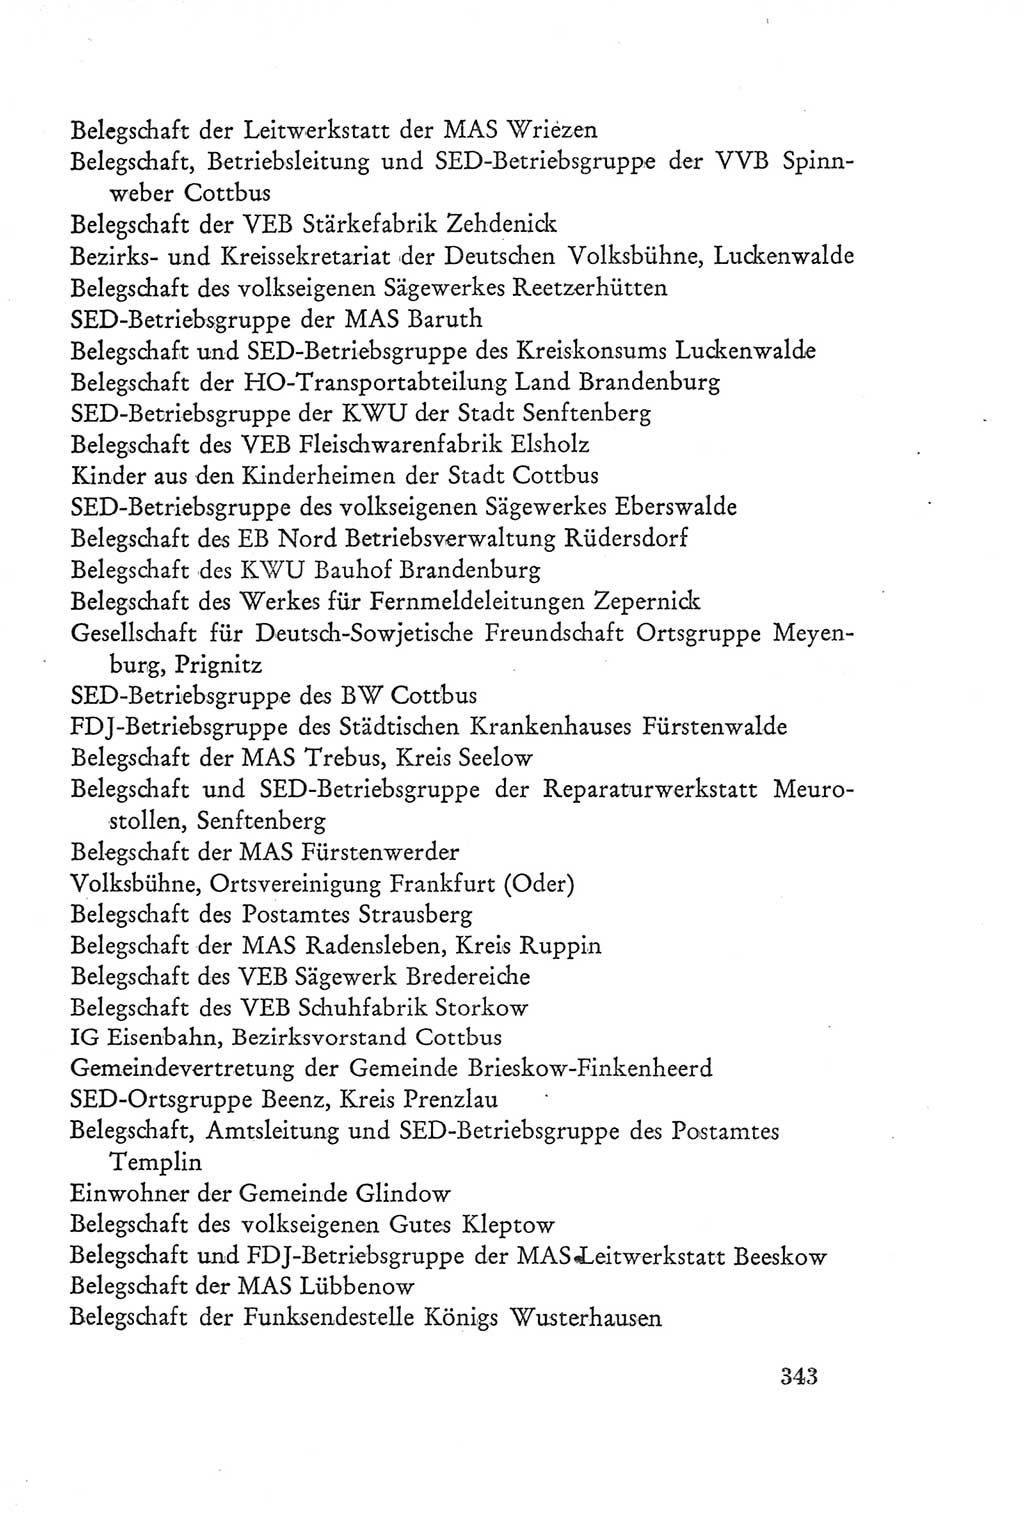 Protokoll der Verhandlungen des Ⅲ. Parteitages der Sozialistischen Einheitspartei Deutschlands (SED) [Deutsche Demokratische Republik (DDR)] 1950, Band 2, Seite 343 (Prot. Verh. Ⅲ. PT SED DDR 1950, Bd. 2, S. 343)